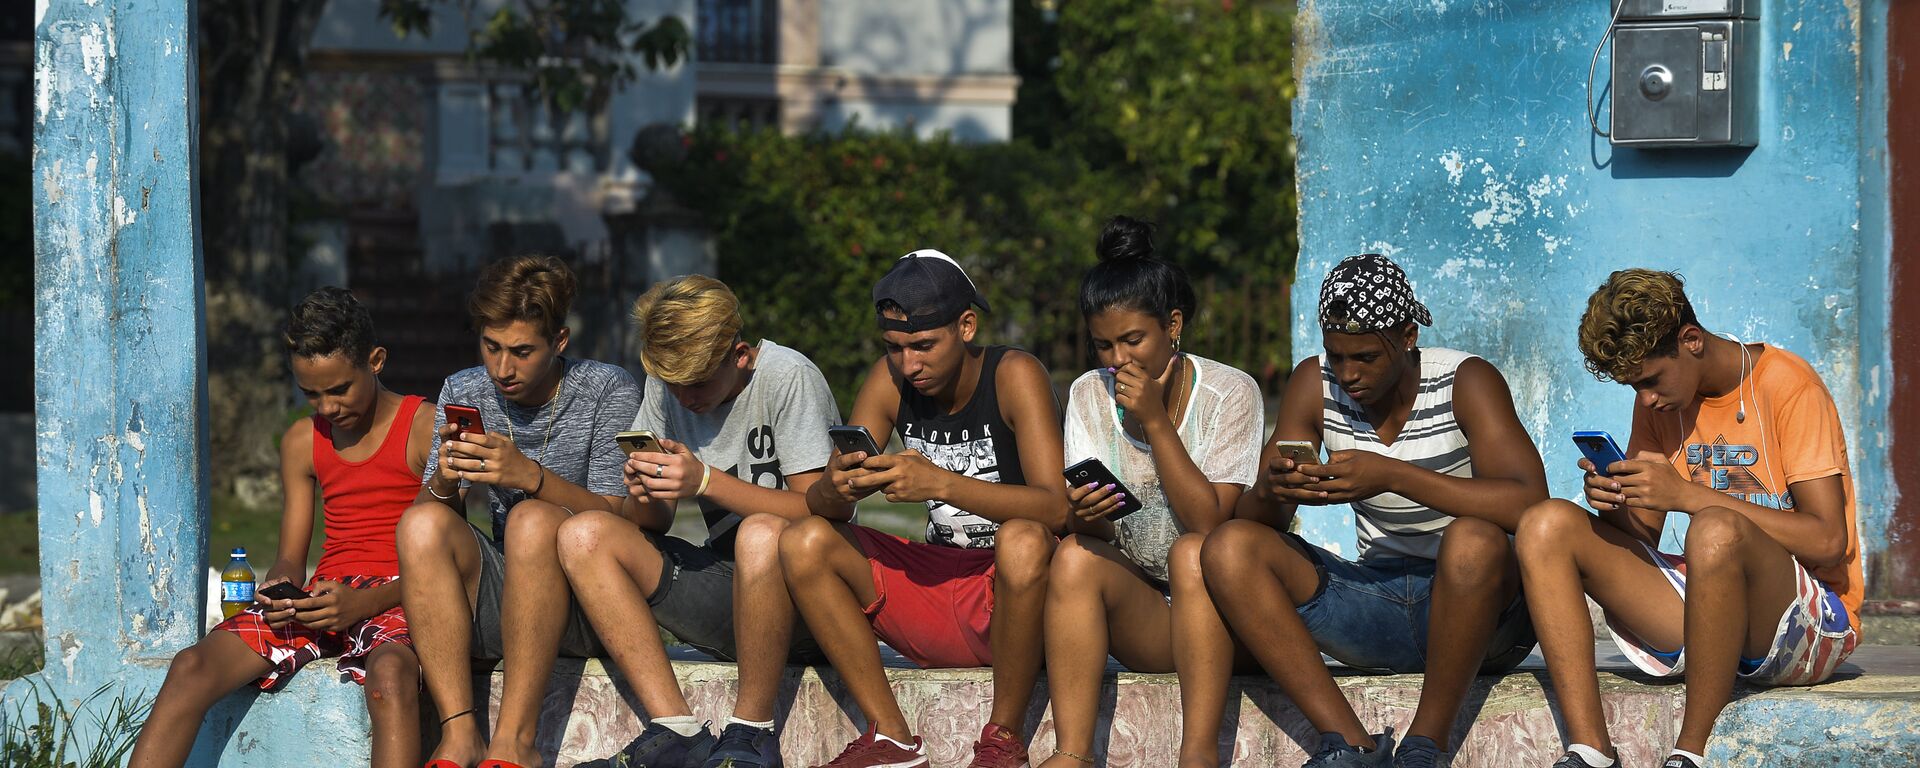 شباب كوبيون مع هواتف محمولة في شارع هافانا، 6 يونيو/ حزيران 2019 - سبوتنيك عربي, 1920, 13.07.2021